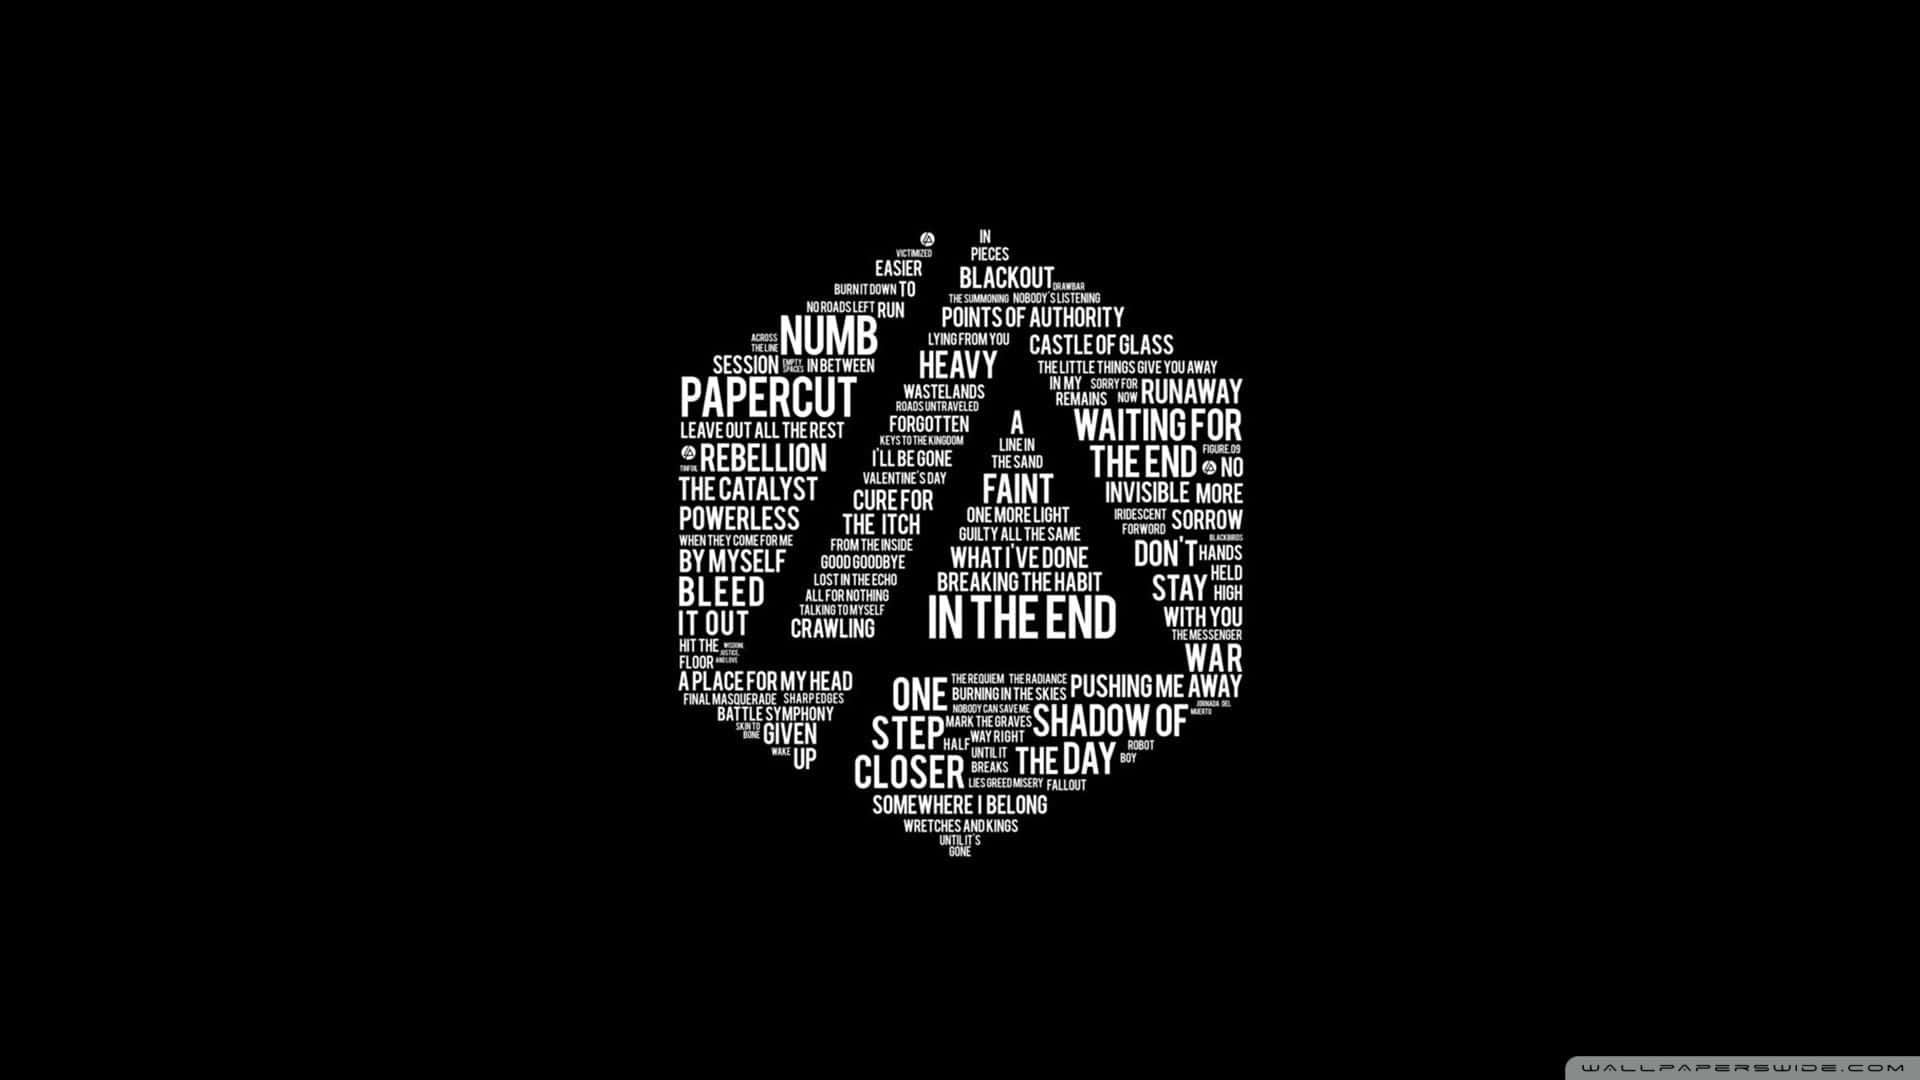 Vis din støtte til Linkin Park med dette iøjnefaldende 4k-tapet! Wallpaper